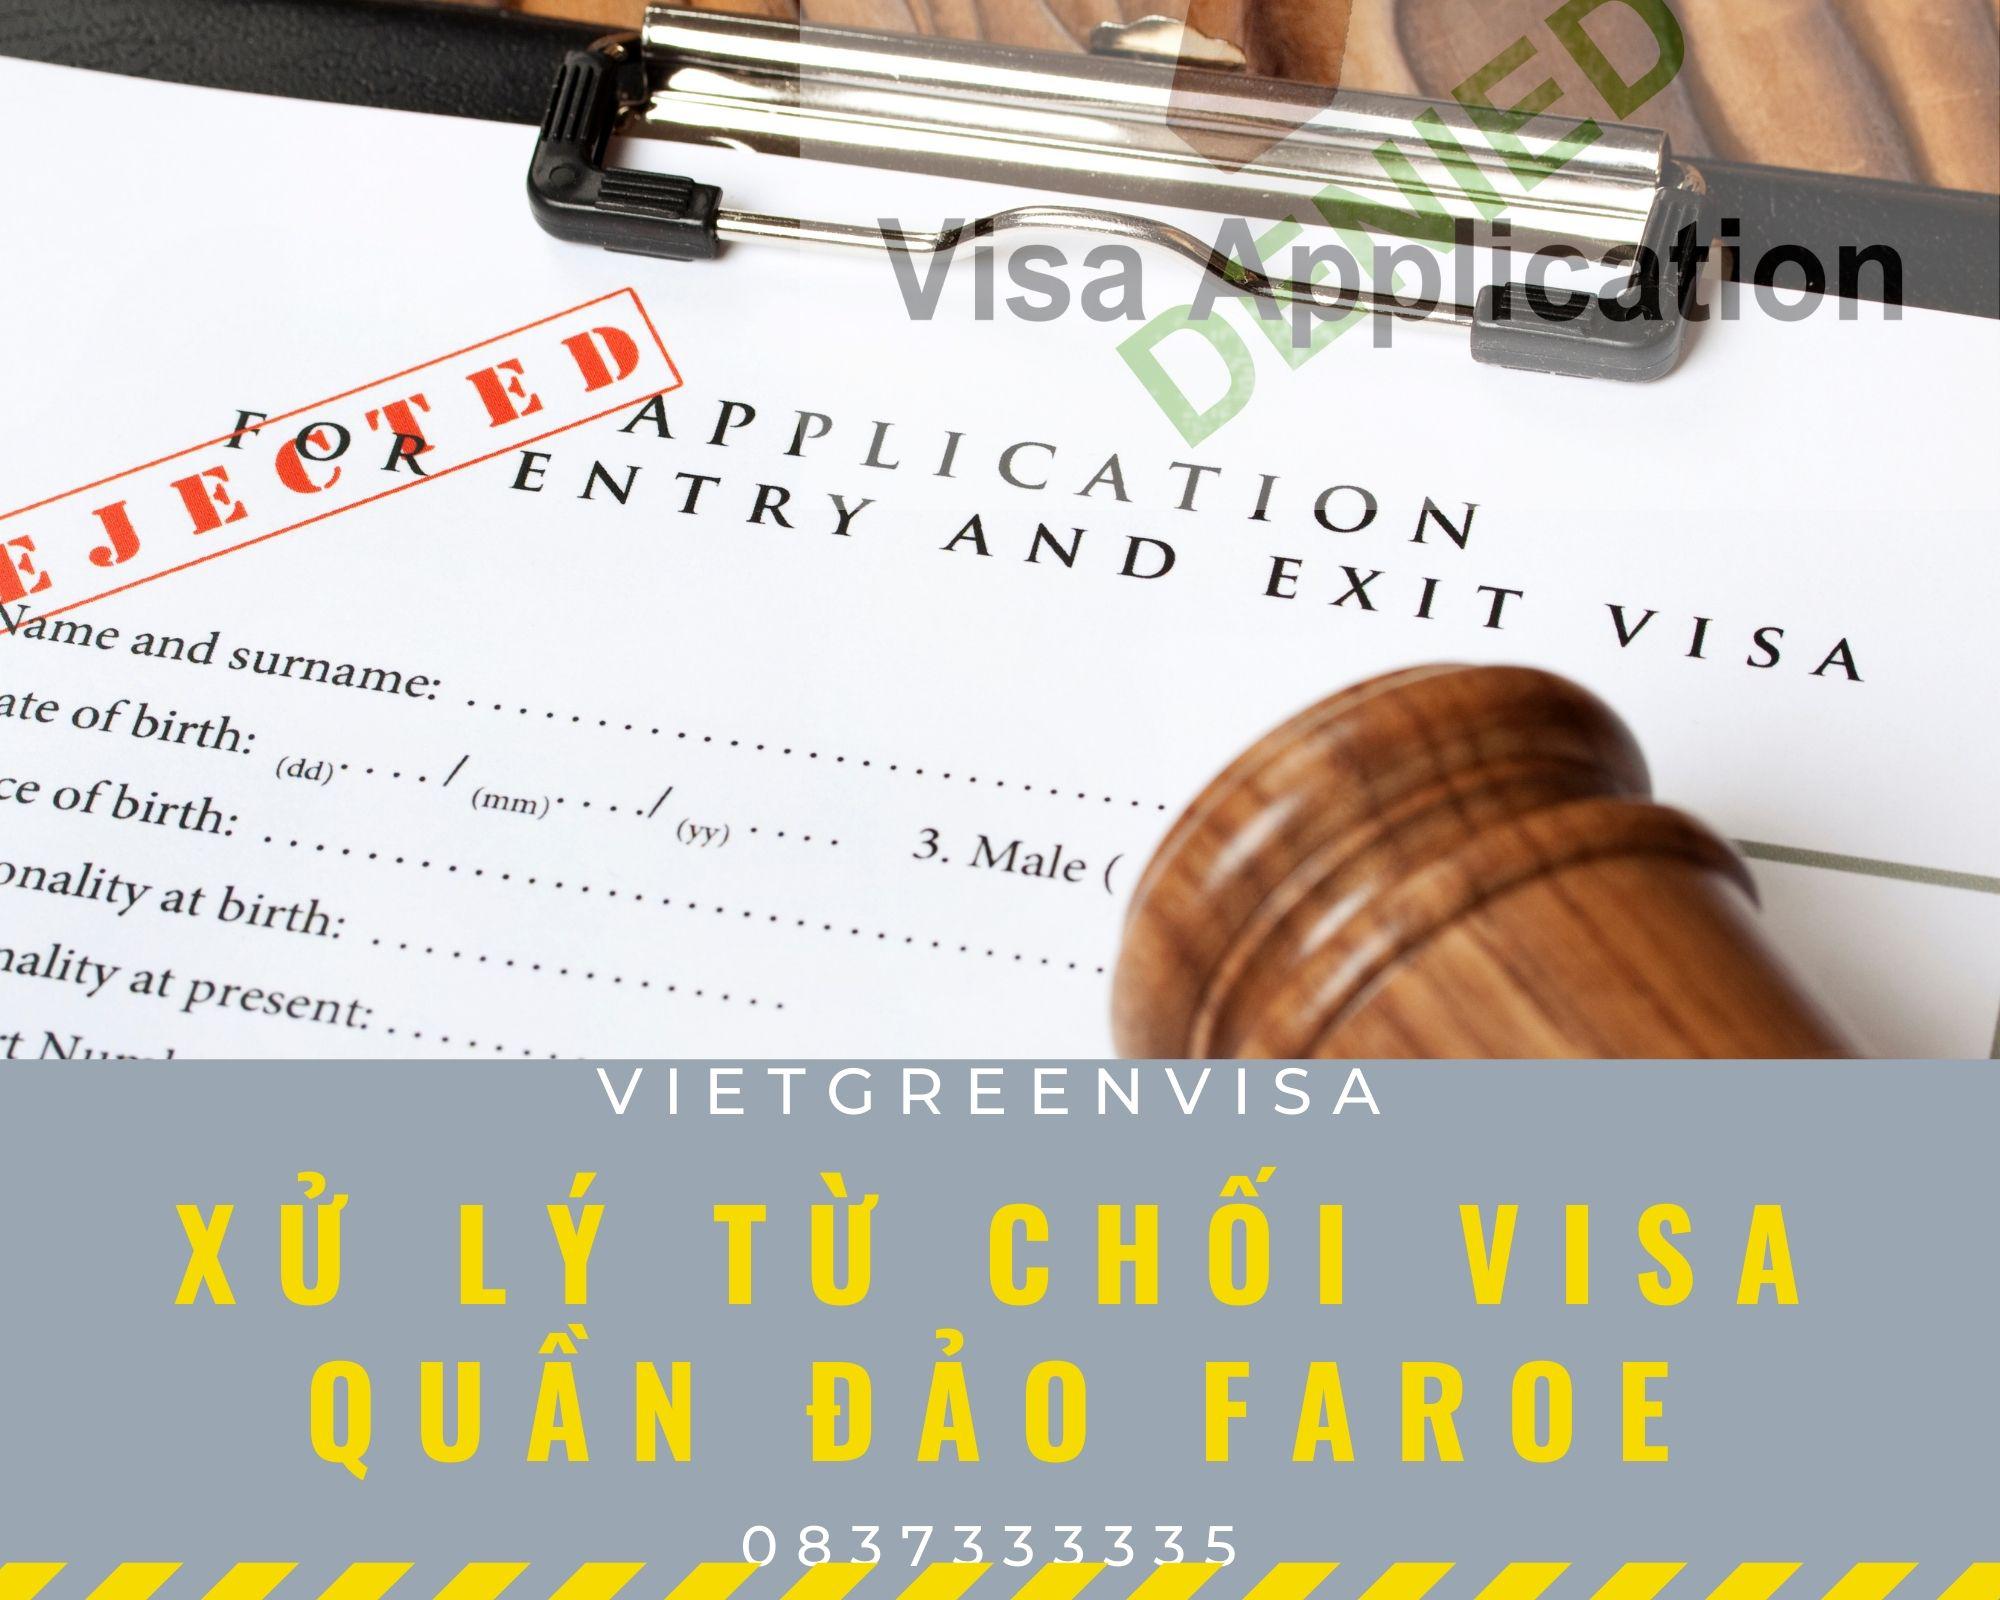 Dịch vụ xử lý visa Faroe bị từ chối nhanh gọn